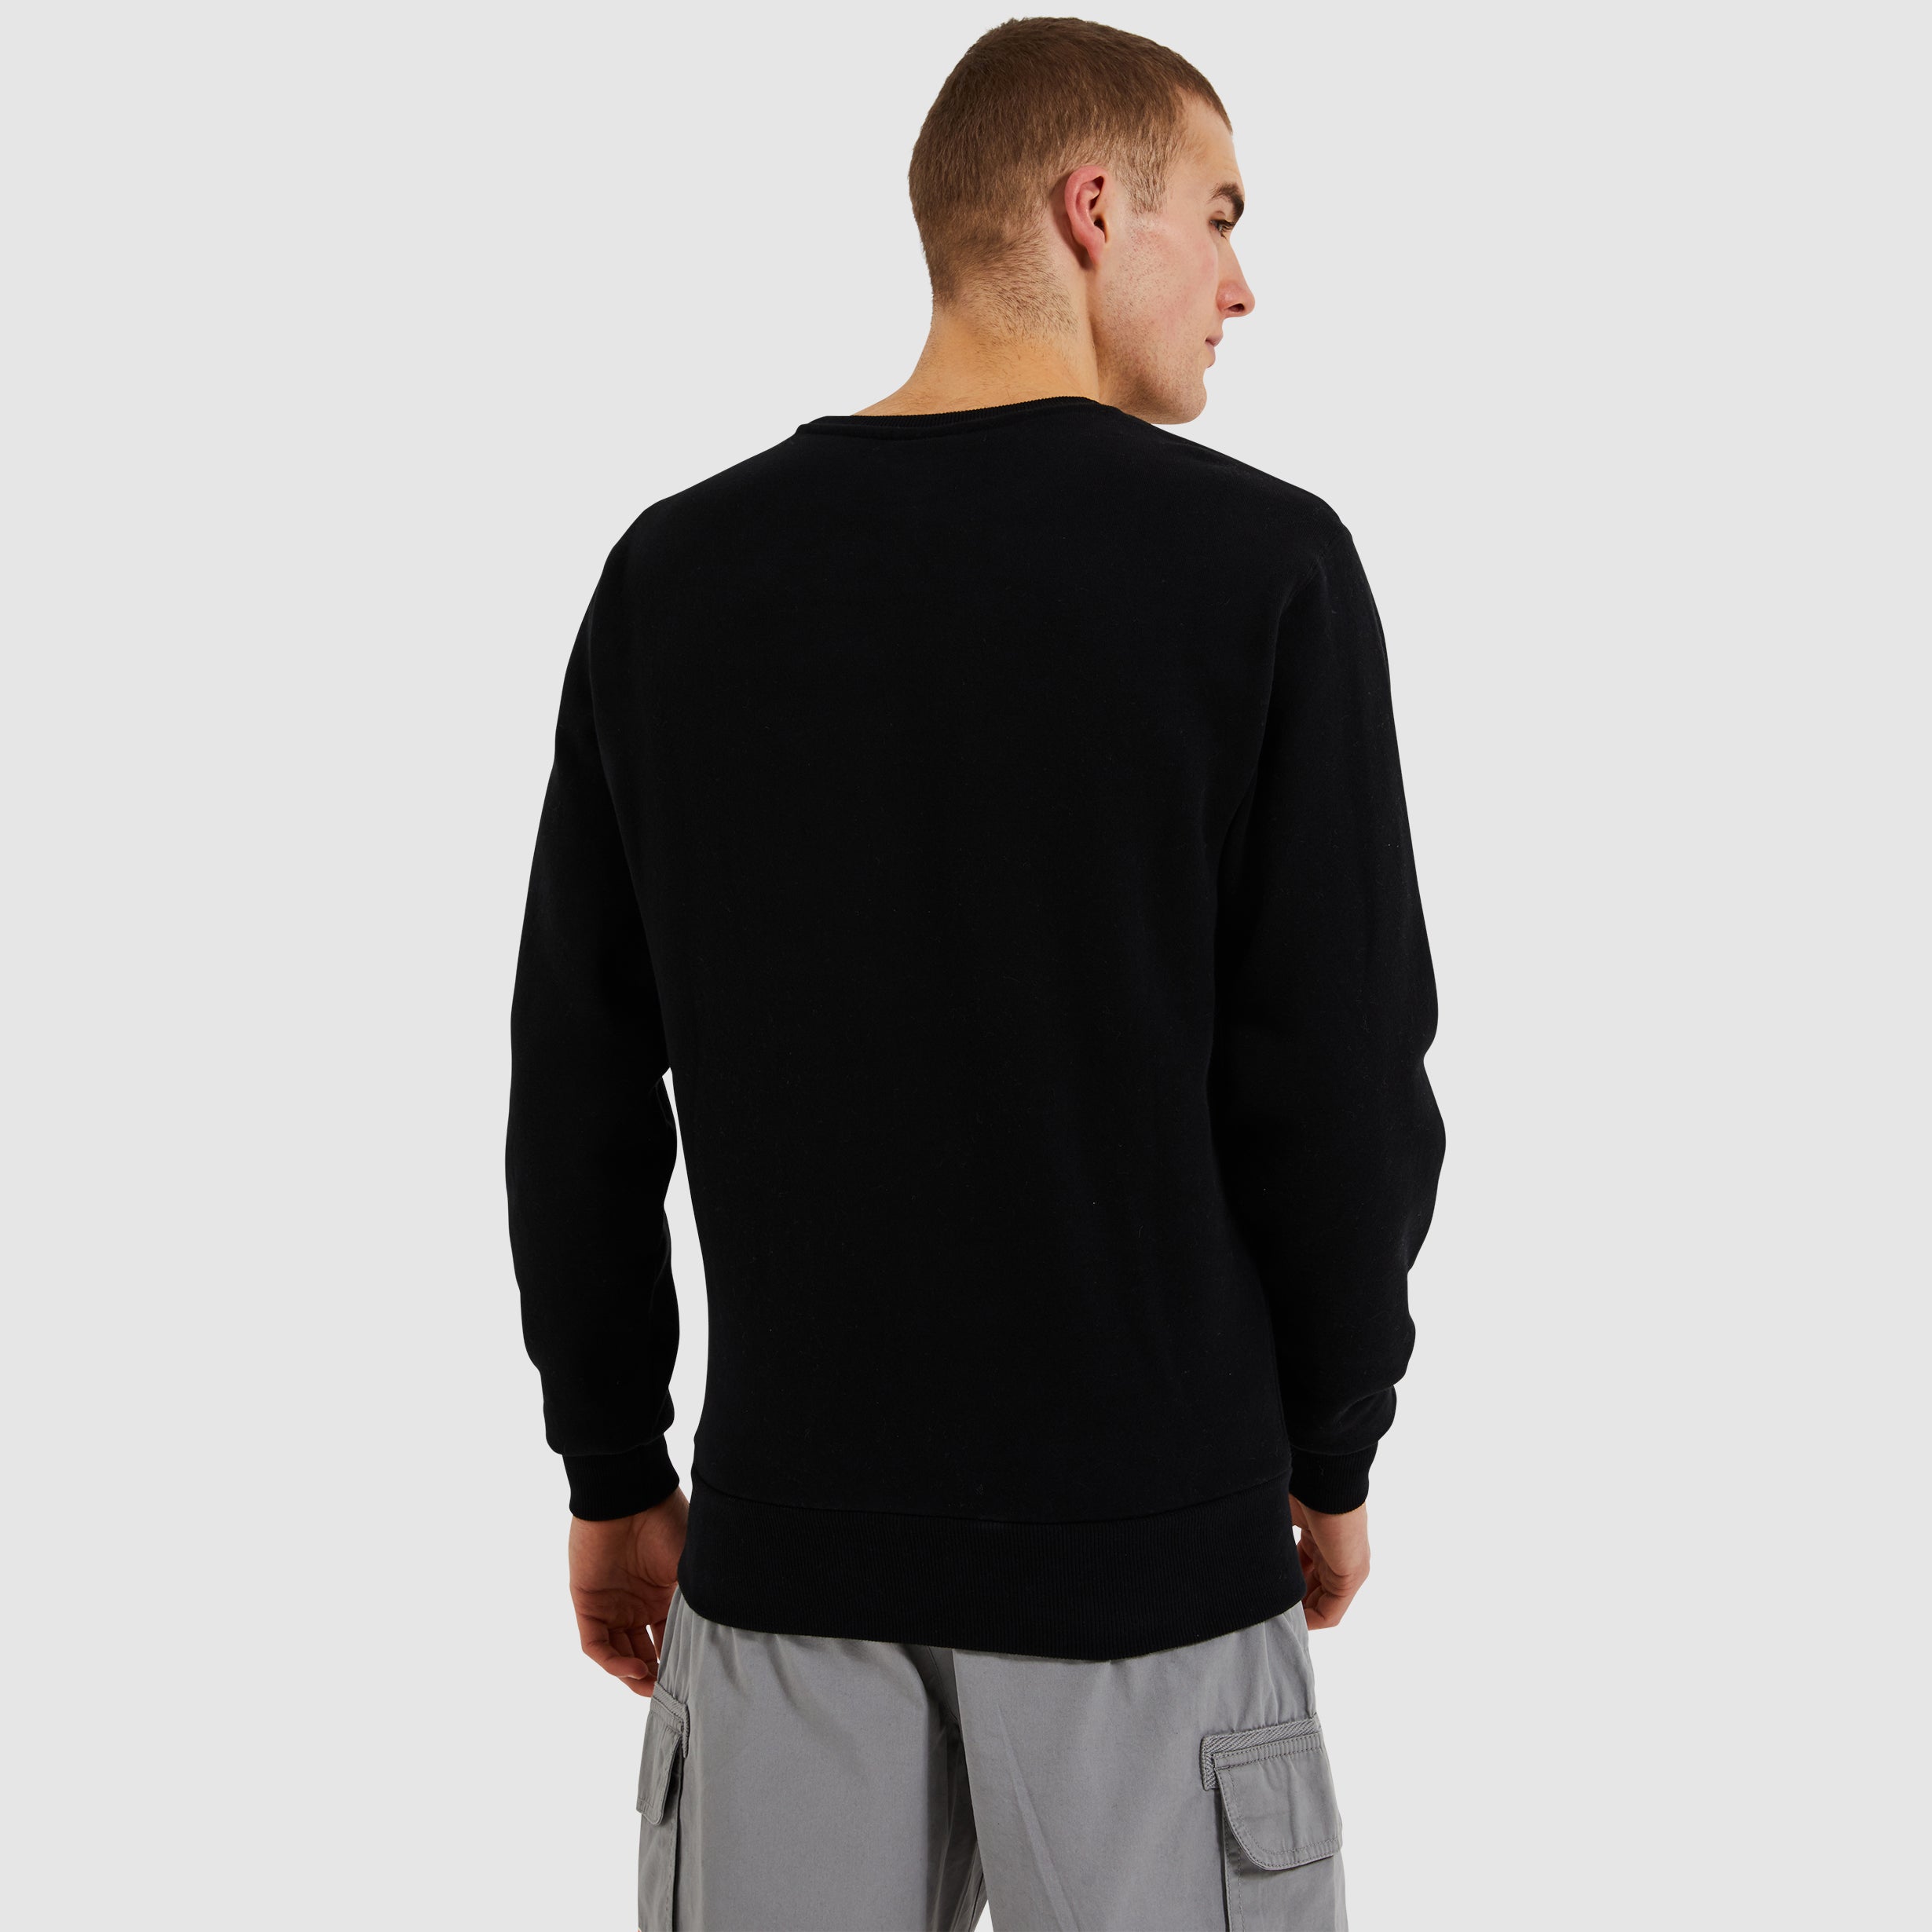 SL Succiso Sweatshirt - Black back